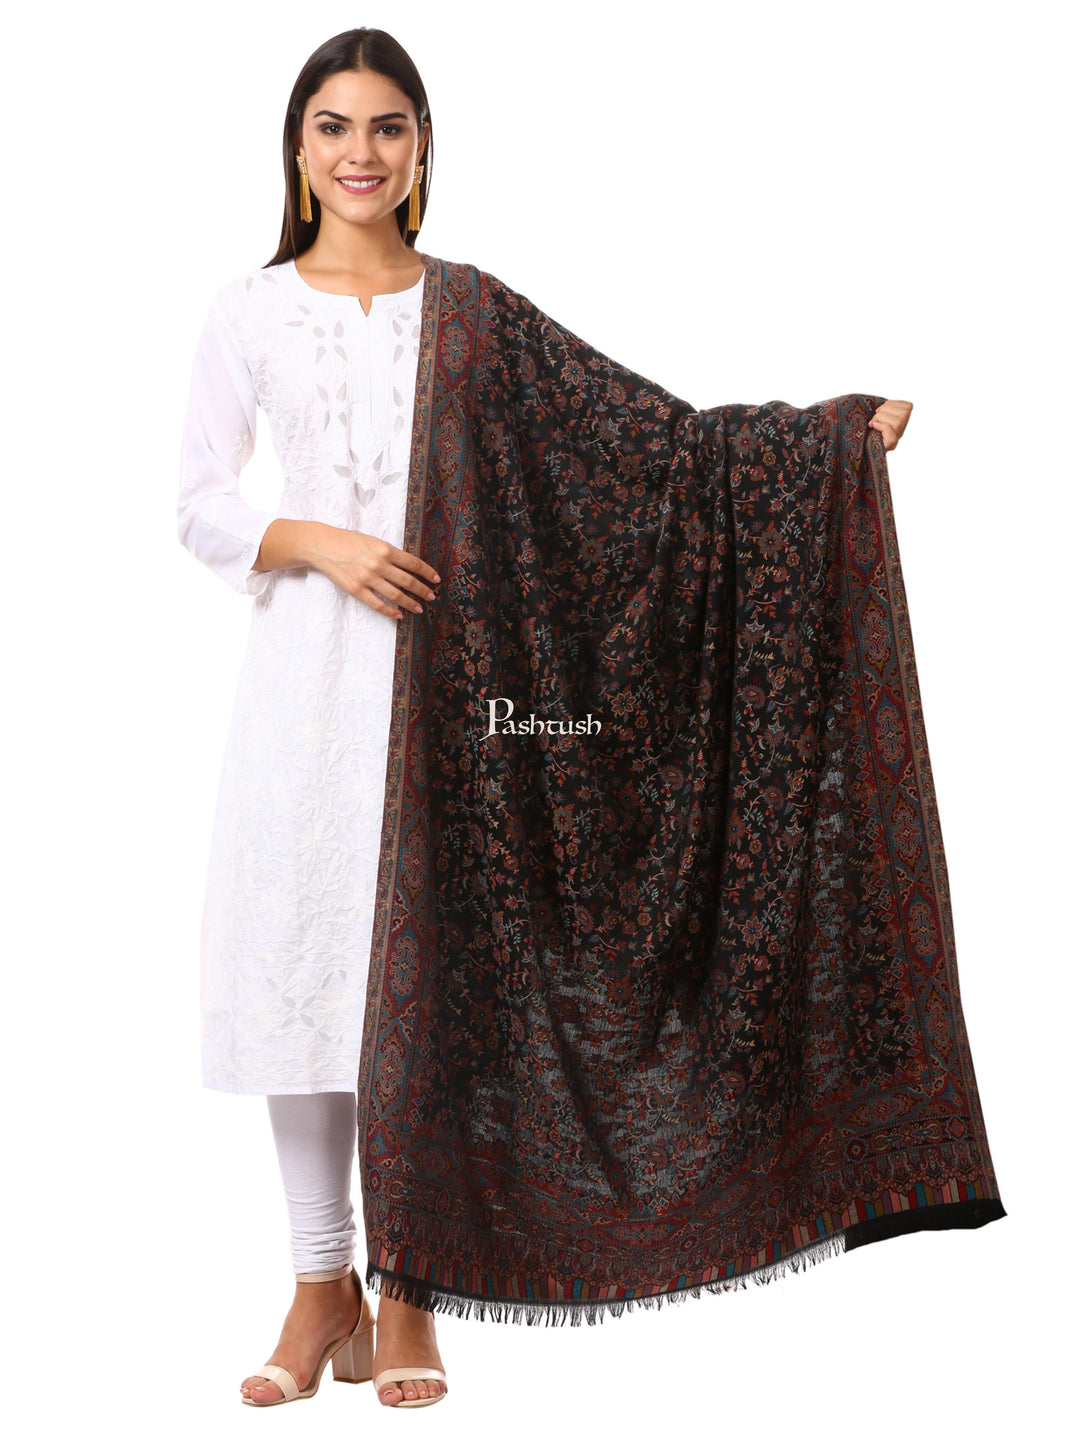 Pashtush India Womens Shawls Pashtush Woven Ethnic Shawl, Faux Pashmina Shawl, Soft And Warm (Black)